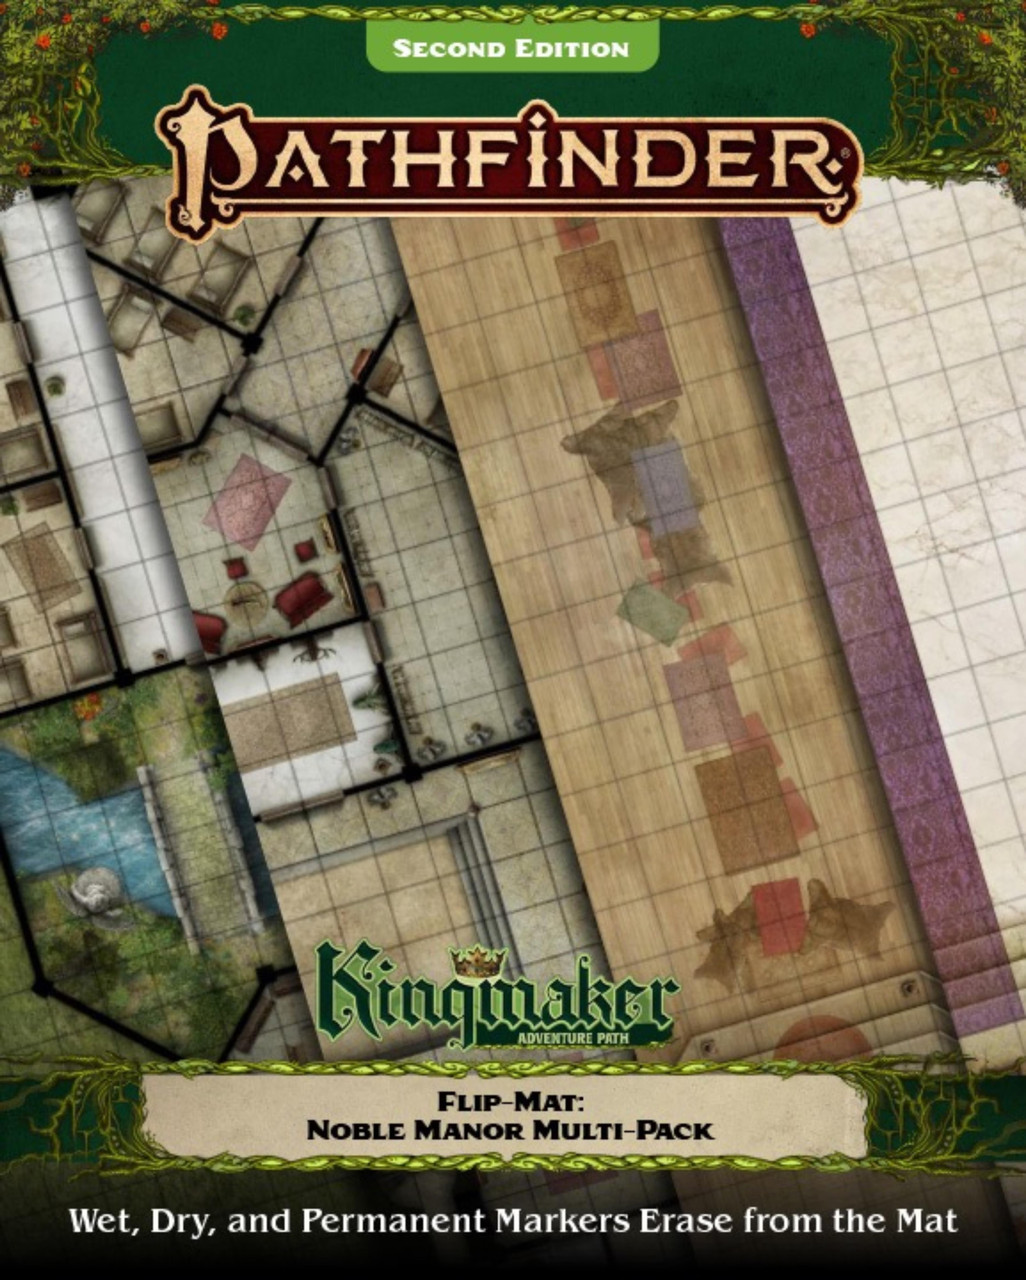 Pathfinder RPG 2nd Edition: Flip-Mat - Underground City Multi-Pack